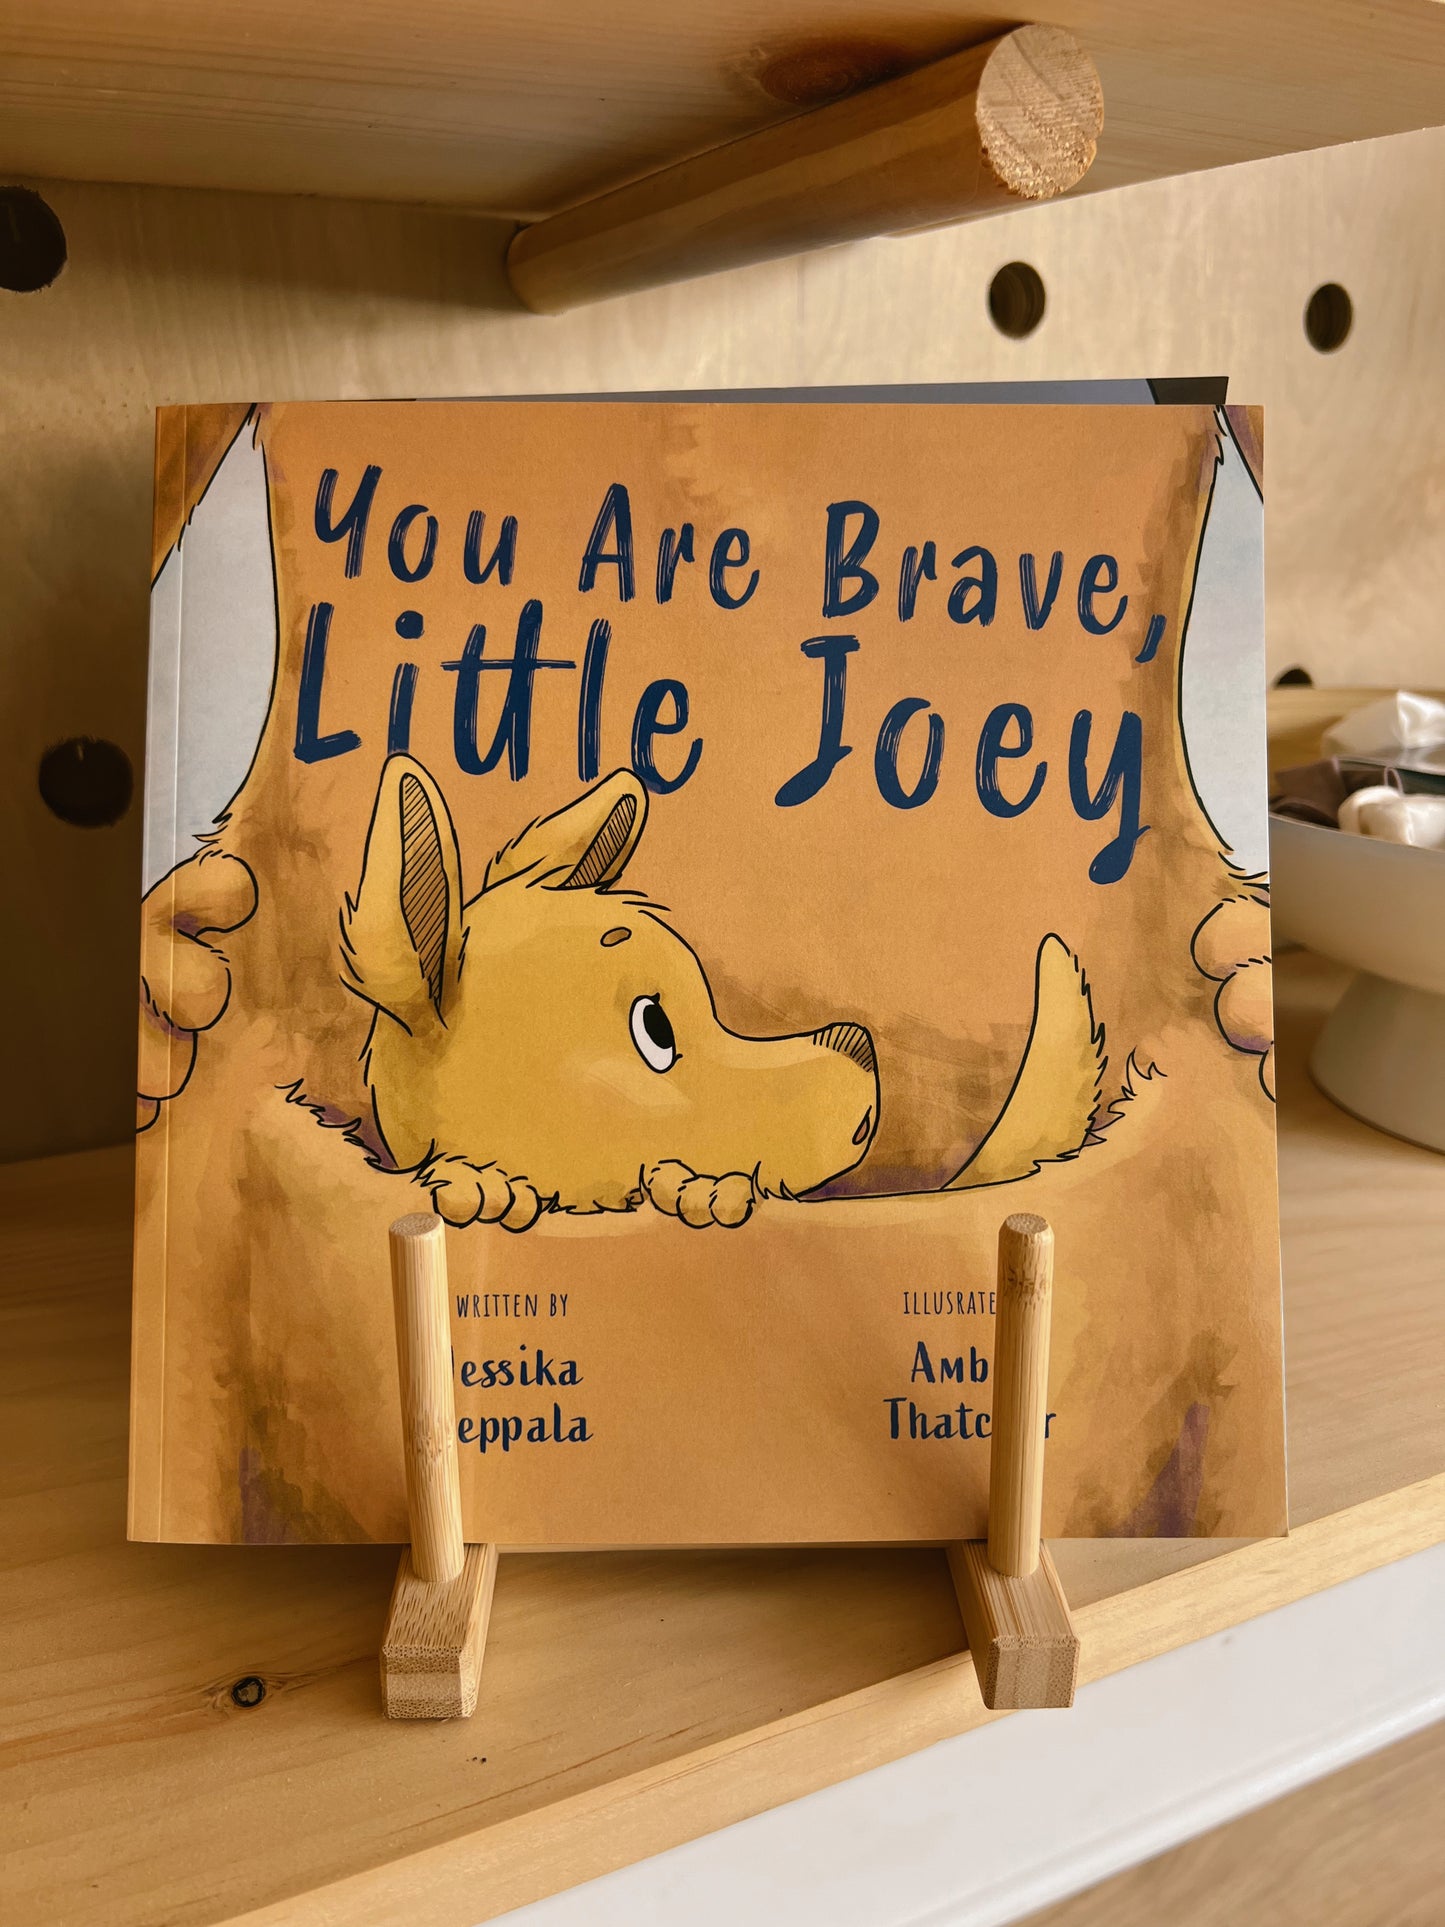 You Are Brave, Little Joey by Jessika Seppala